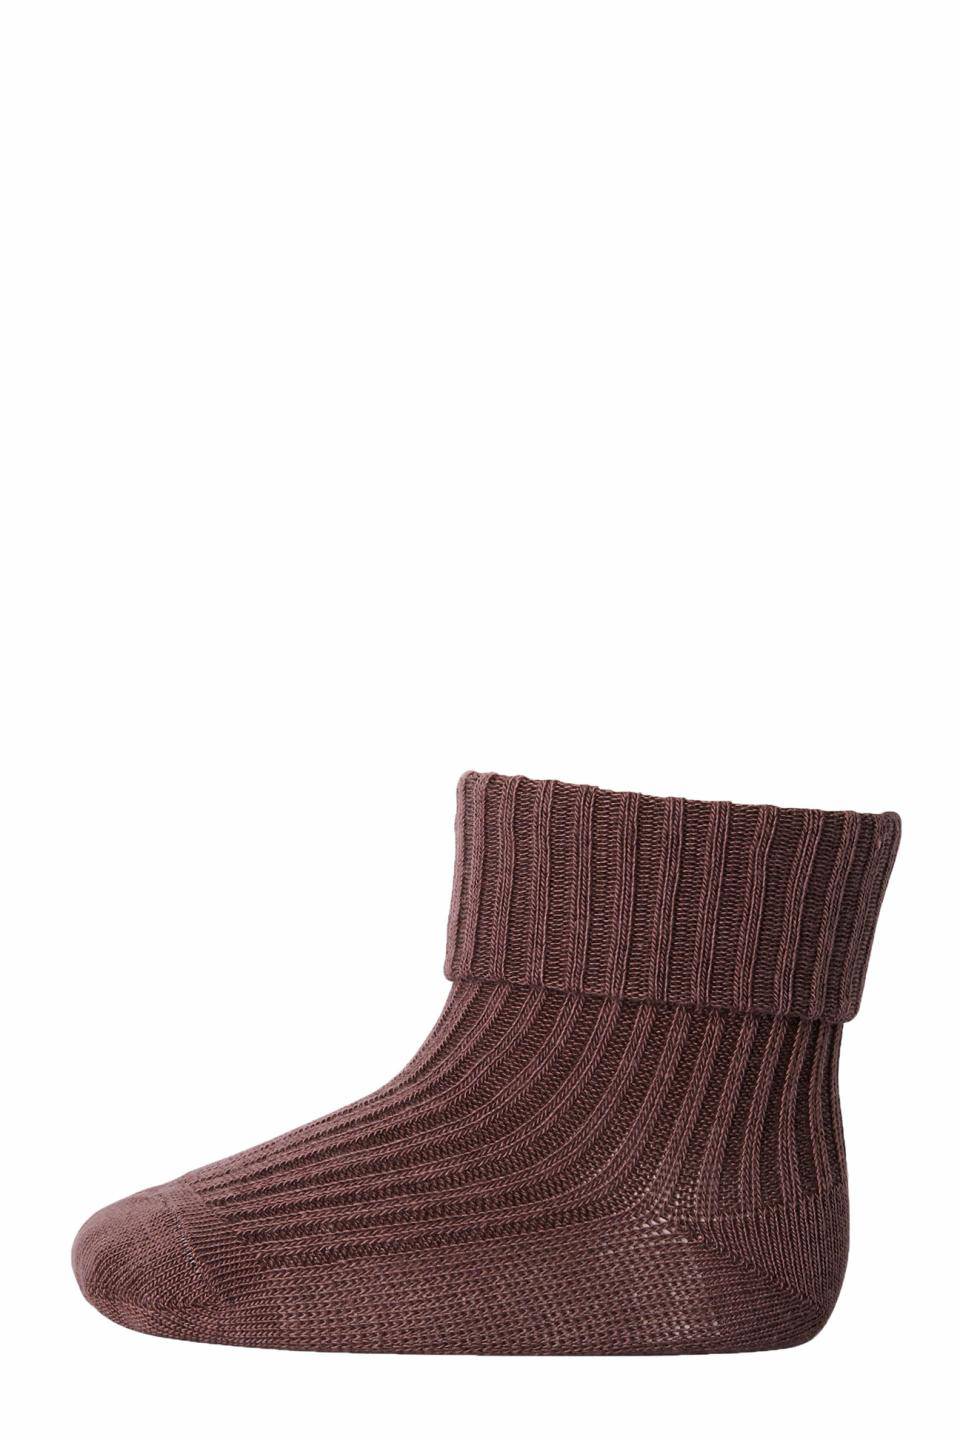 MP Denmark - cotton rib socks - 10-533-0 76 - brown sienna - Hyggekids